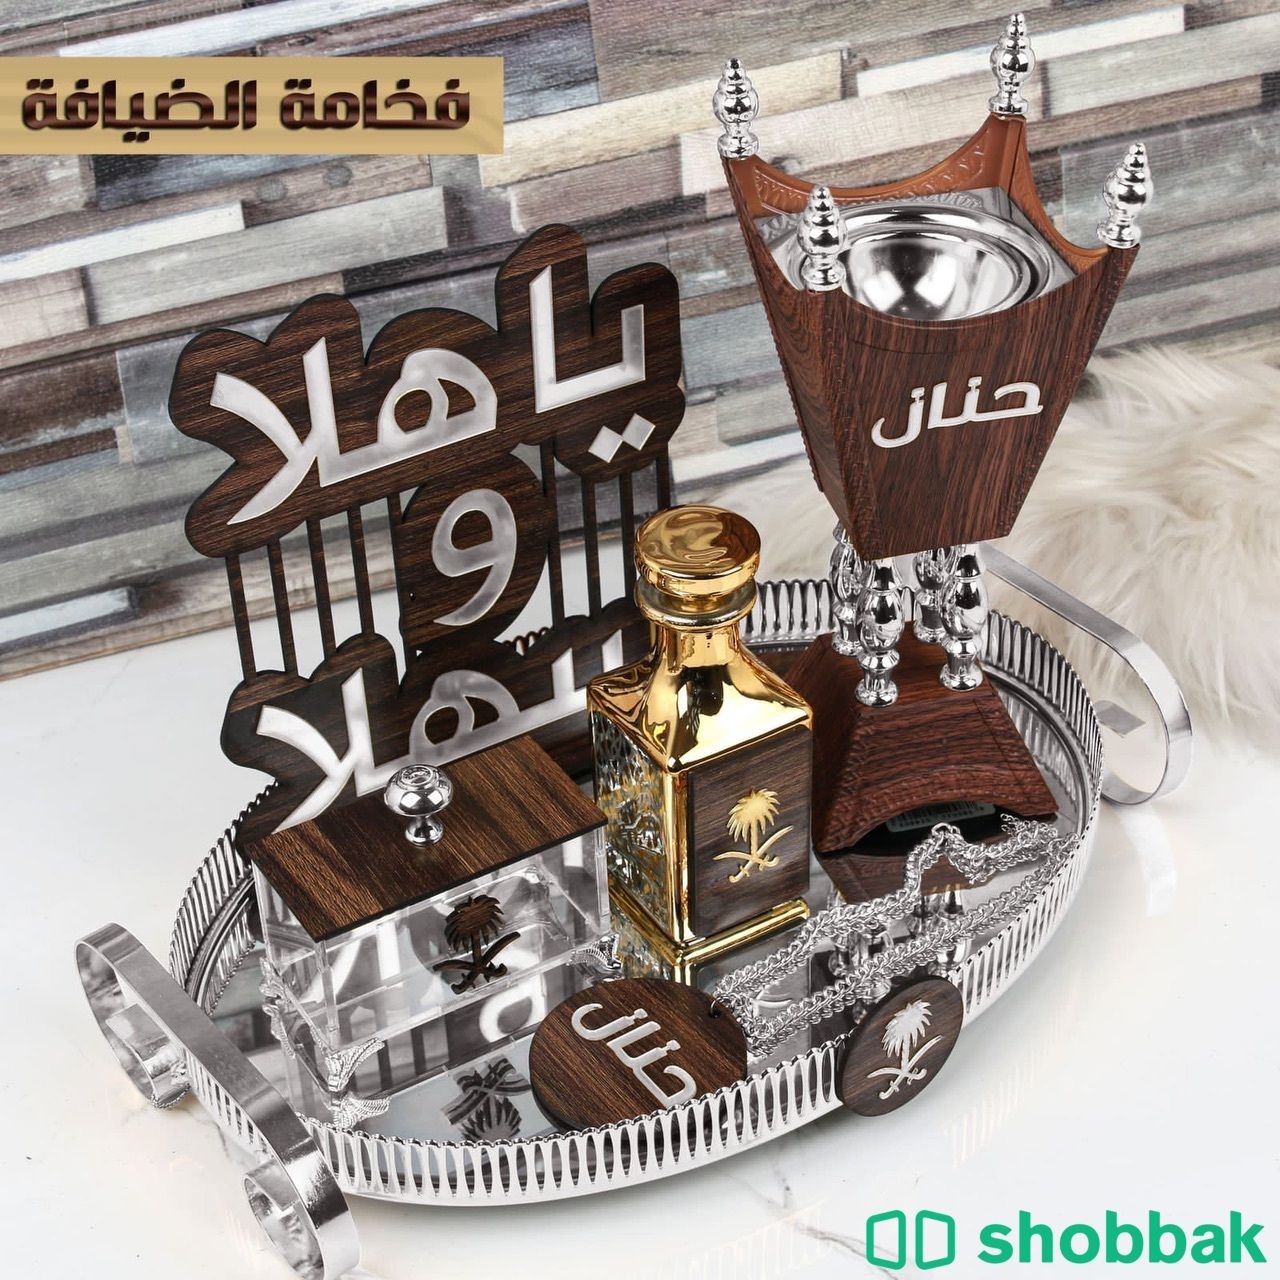 طقم مبخرة فاخرة مع الاسم والعبارة Shobbak Saudi Arabia